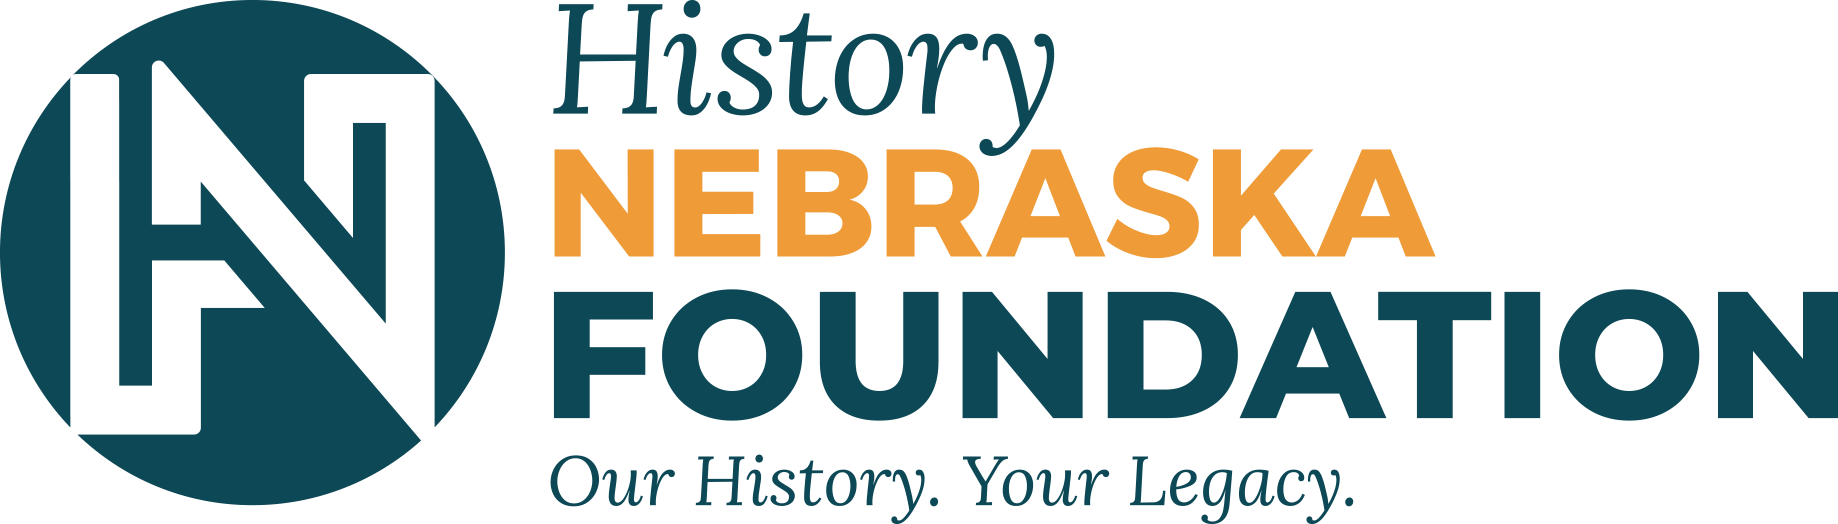 History Nebraska Foundation